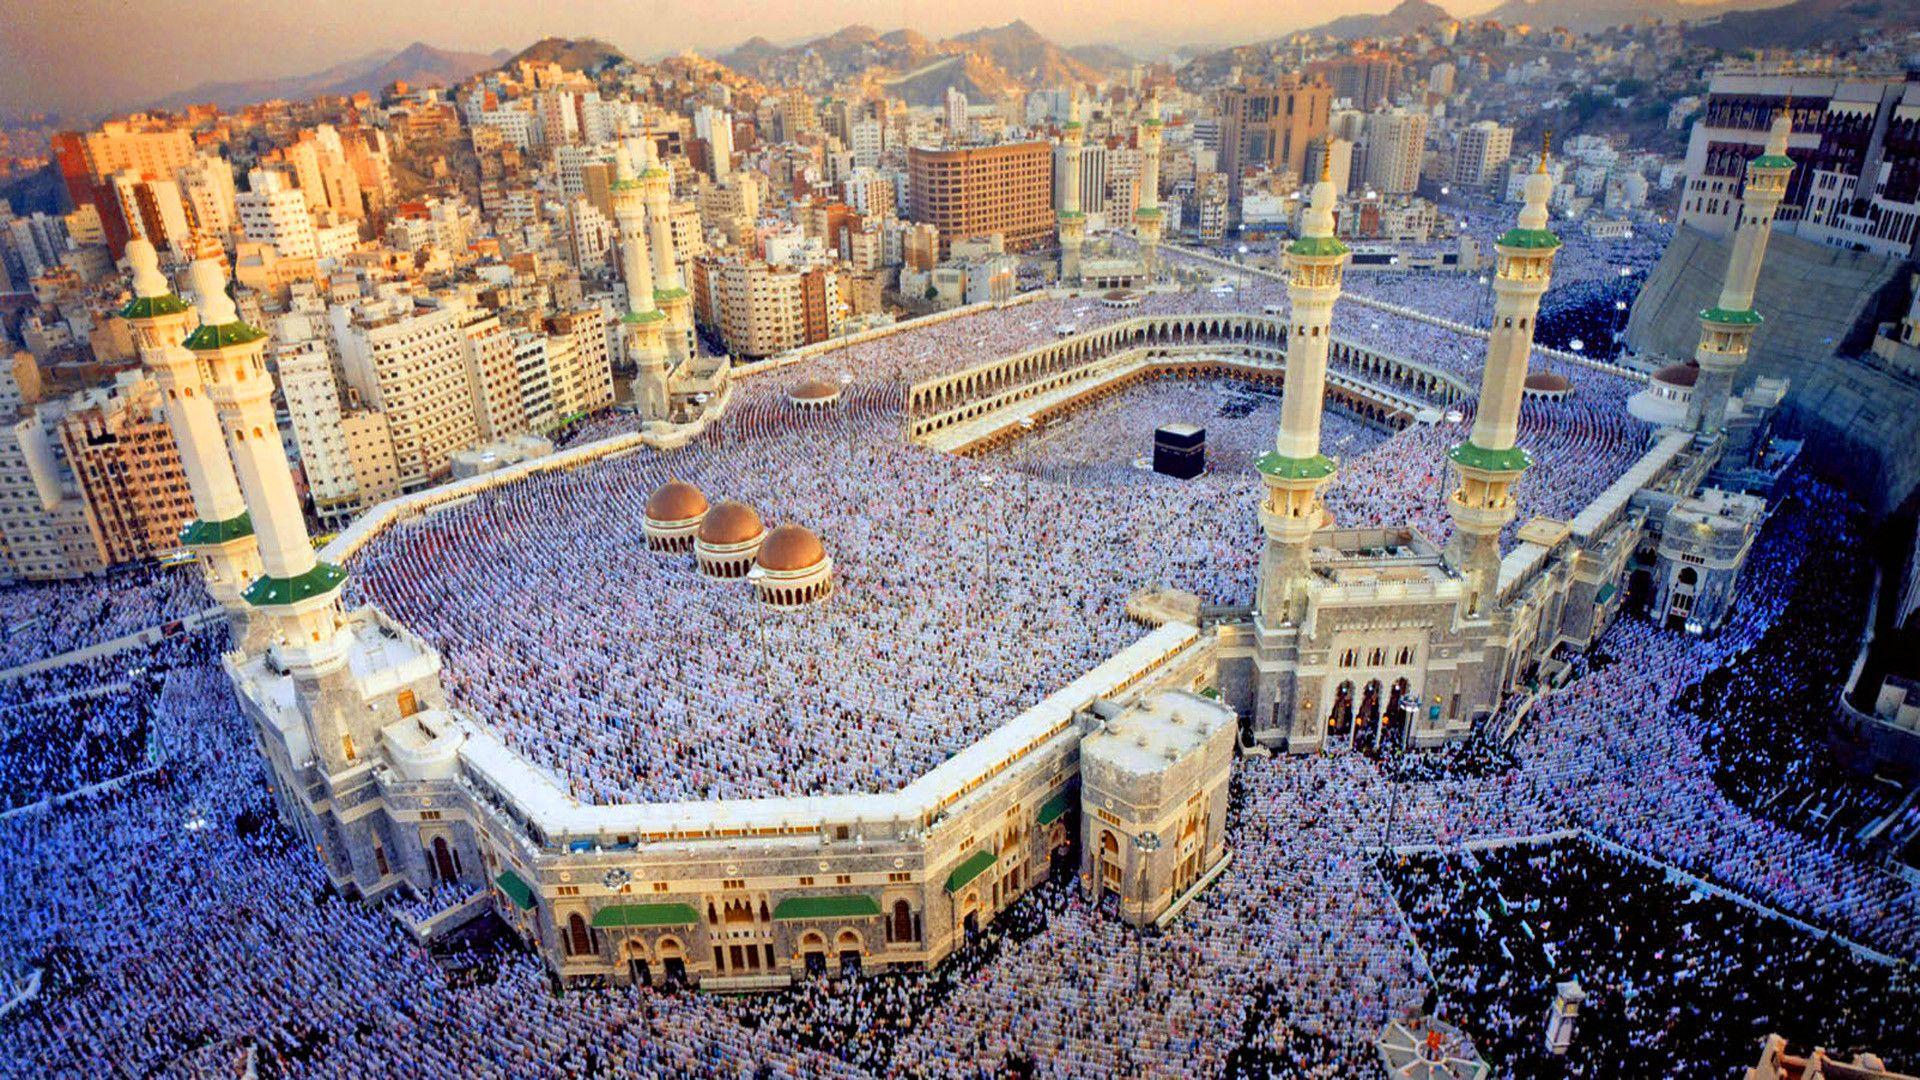 Мекка в каком городе. Мечеть Аль-харам (Запретная мечеть), Мекка. Саудовская Аравия Мекка Кааба. Мечети Мекки и Медины. Масджид Аль-харам – Мекка, Саудовская Аравия.